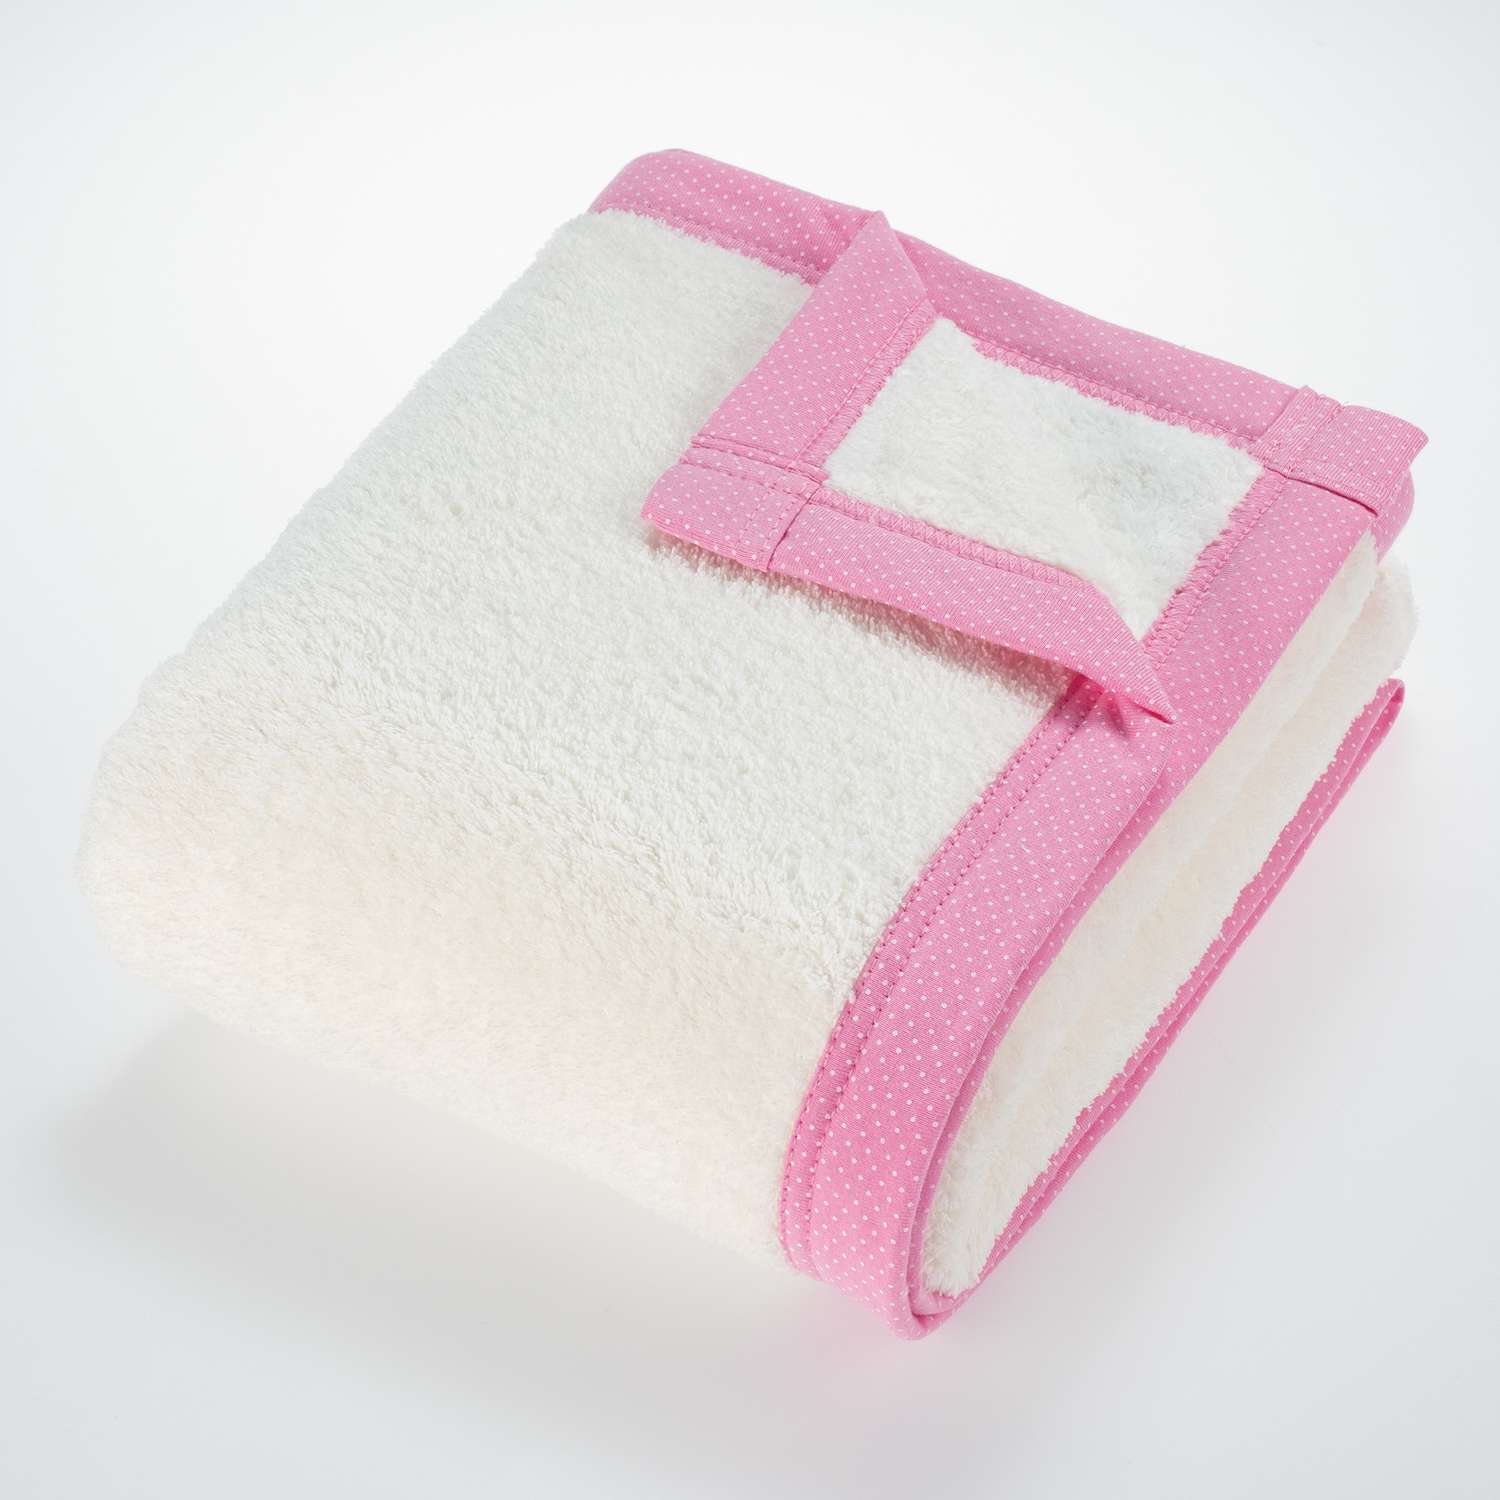 Плед для новорожденных Mrs.Stretch Mr.Jersy 80х105 см велсофт утепленный цвет молочный/ярко-розовый - фото 1